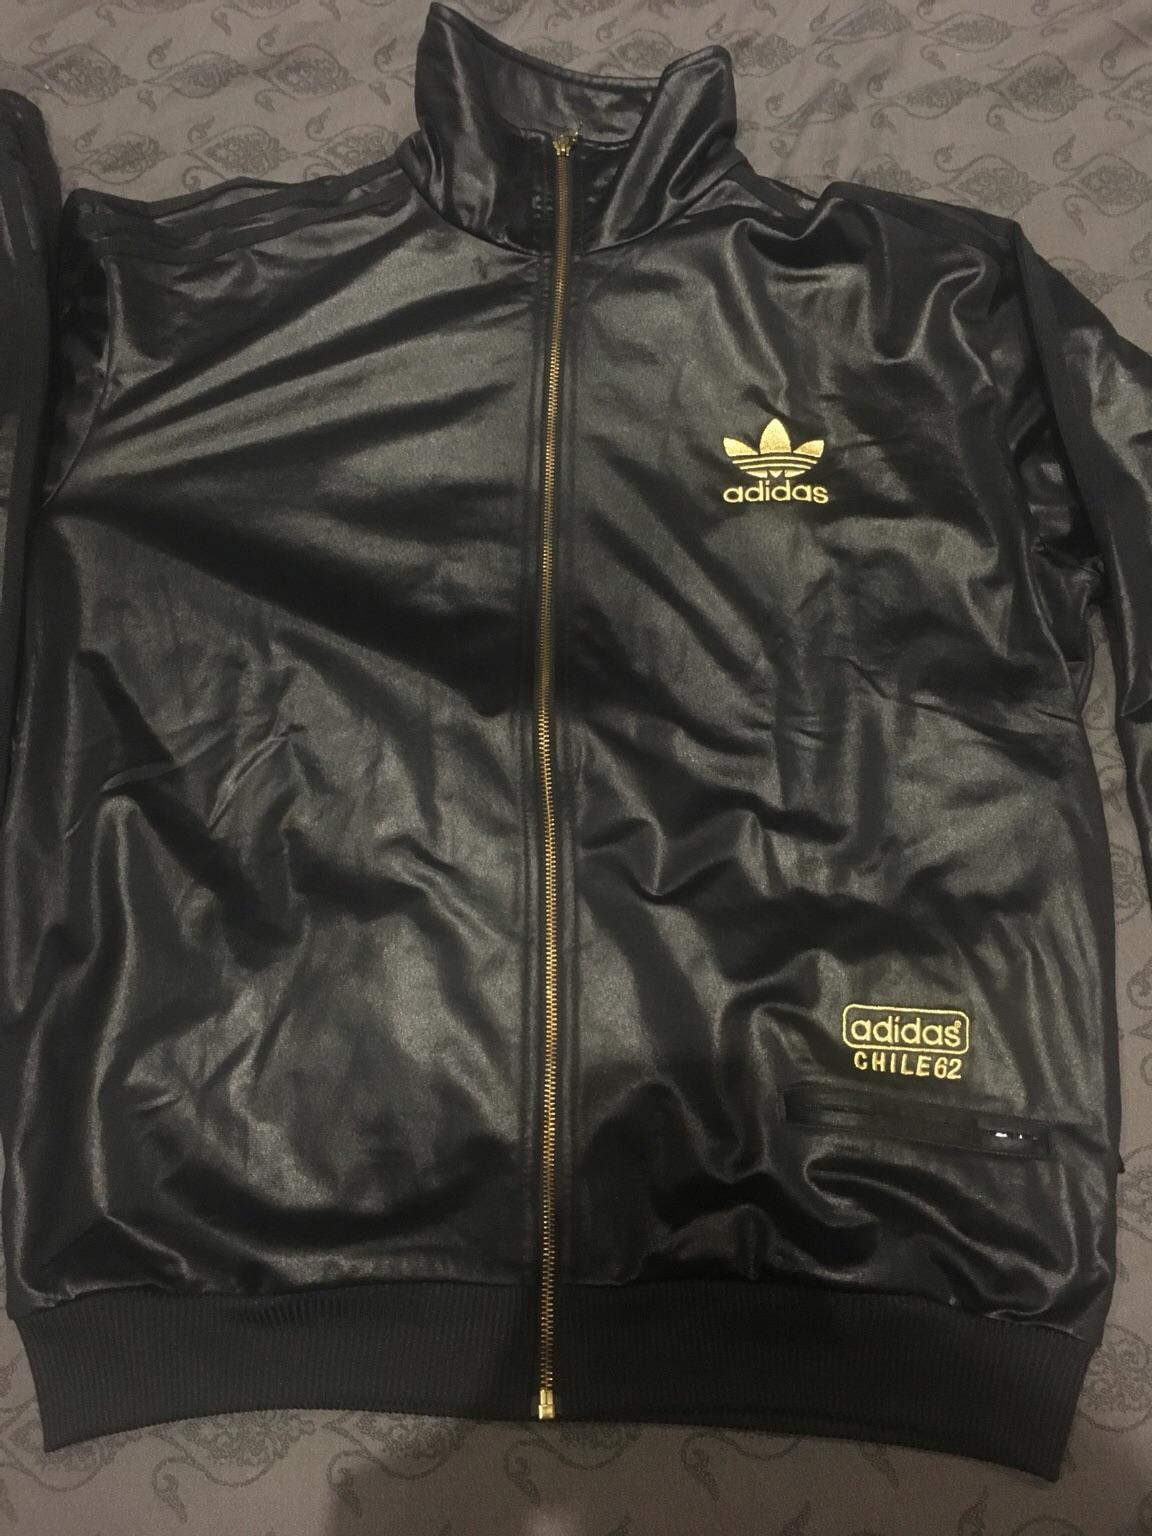 adidas chile 62 jacket black gold